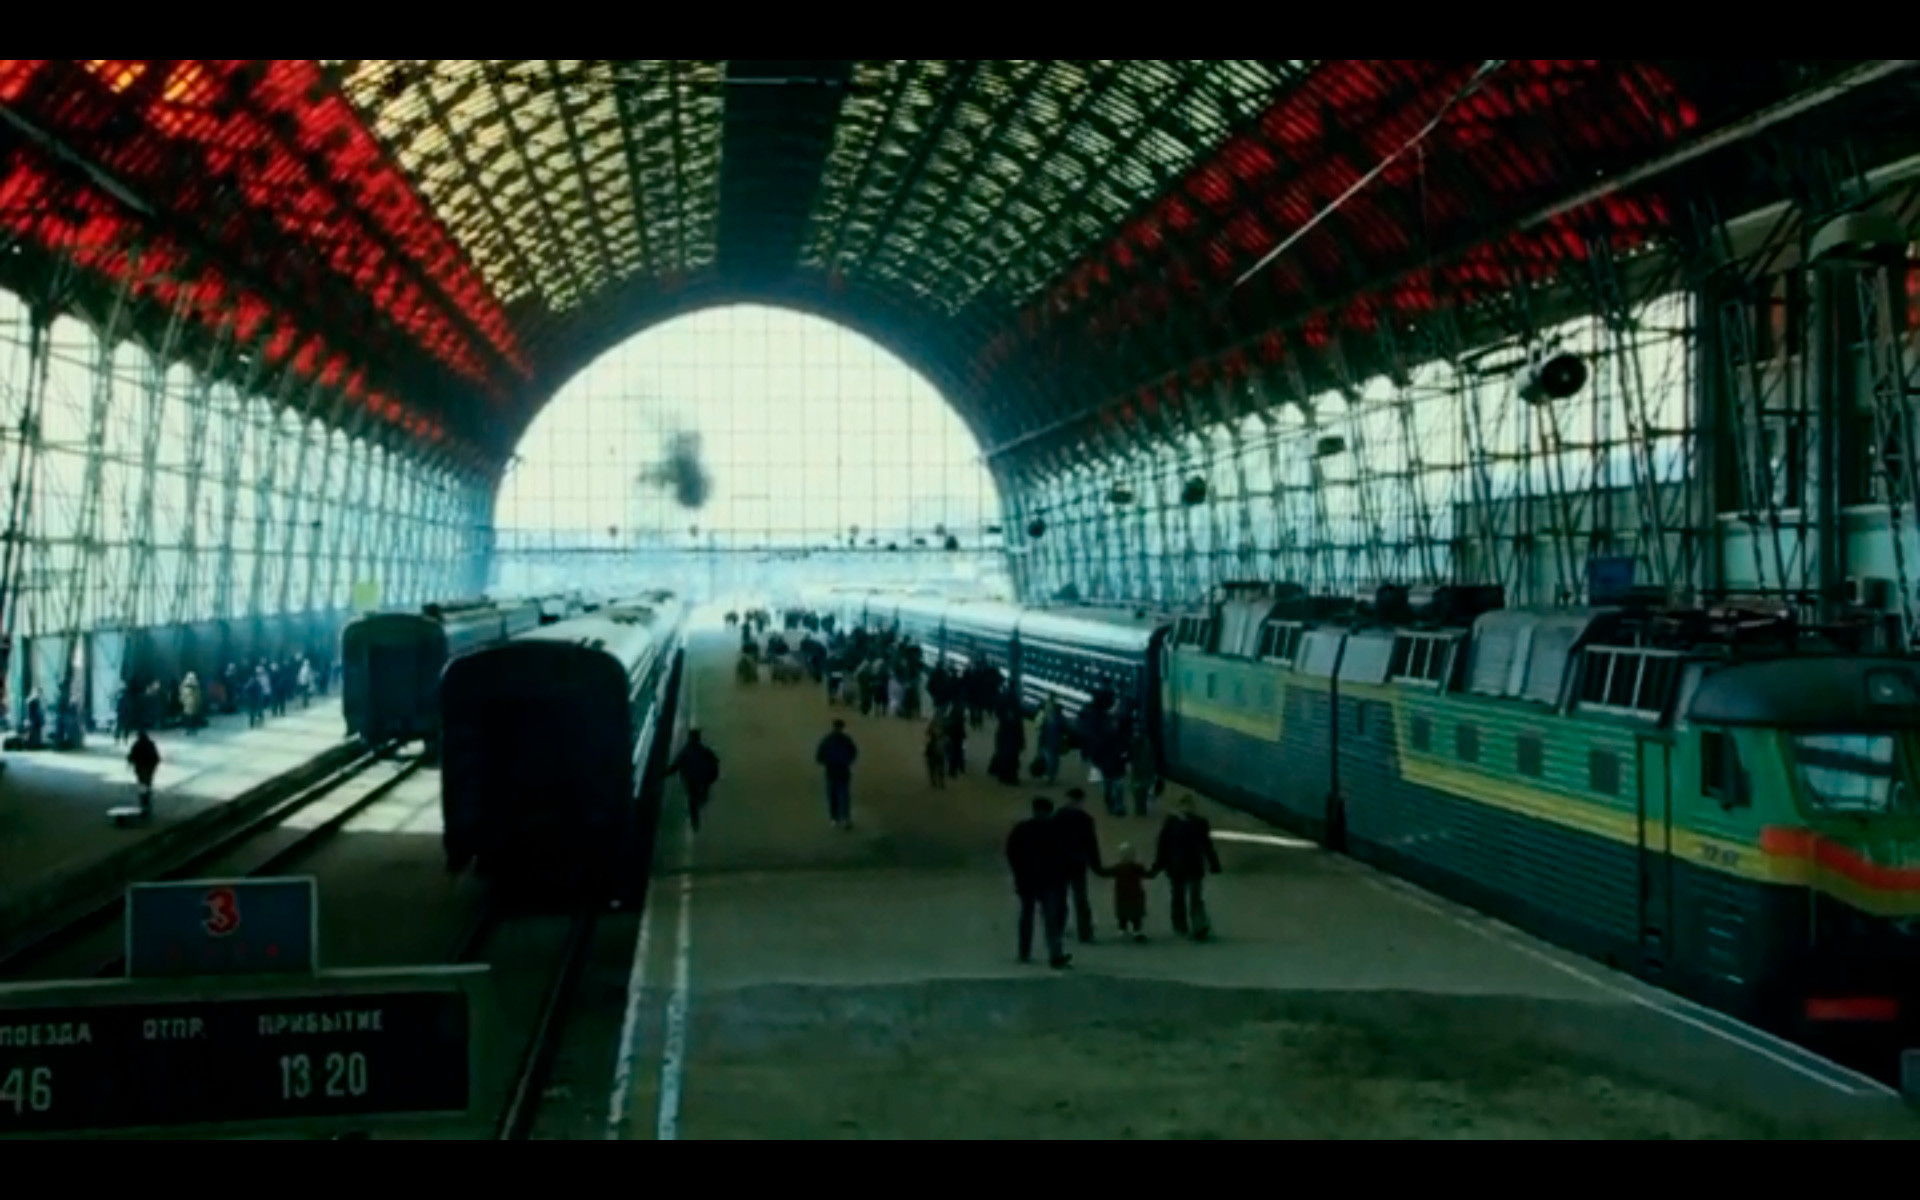 La verdadera estación de tren de Kievski, a donde Bourne llega en algún momento del año 2004